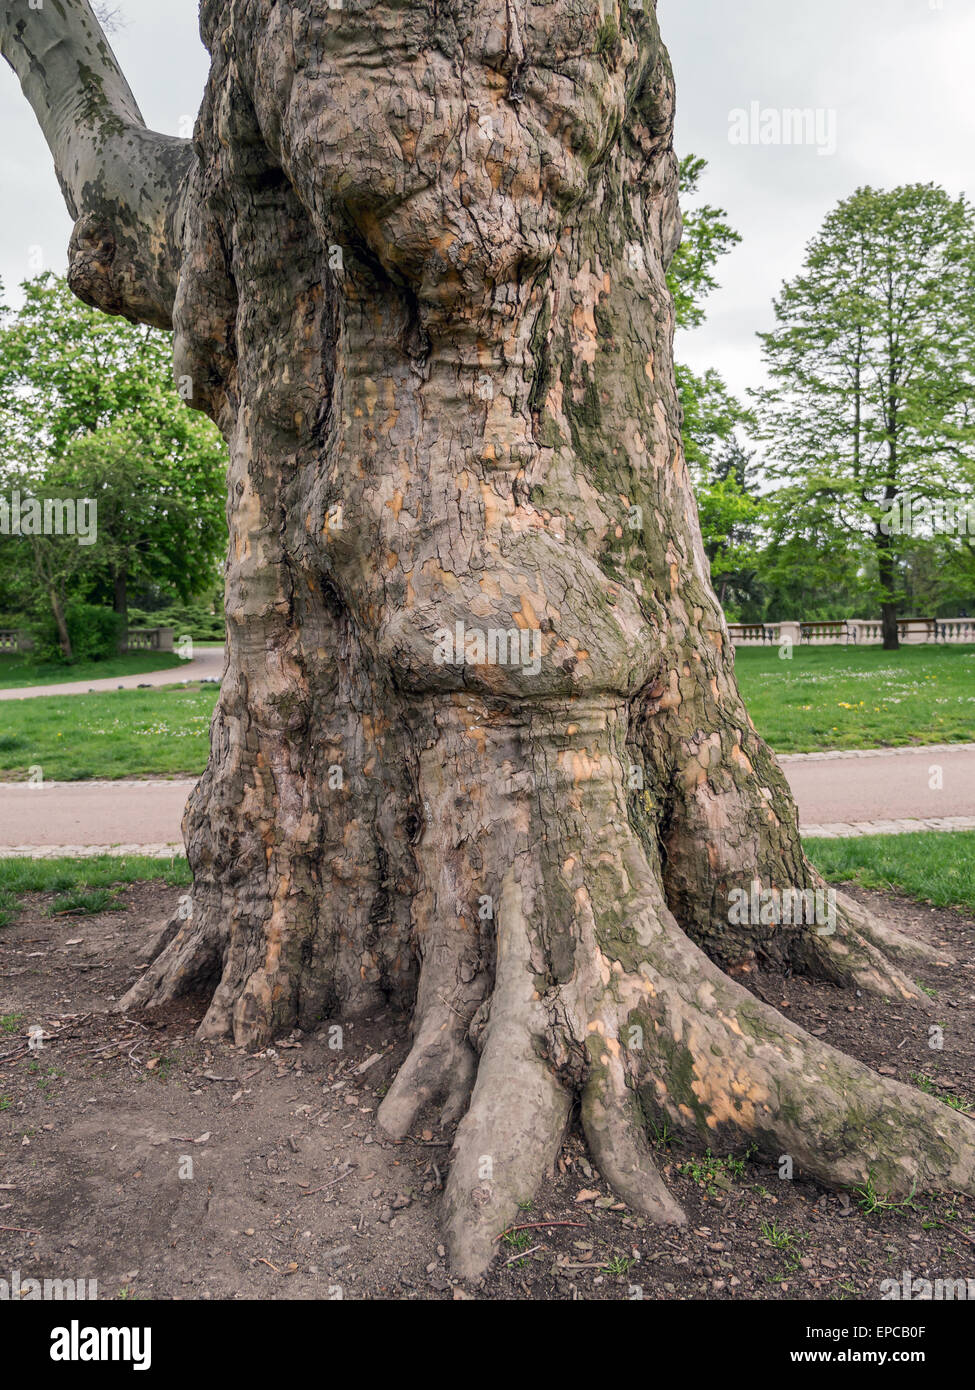 Gigante de sicomoro tronco de árbol que crece en el parque Foto de stock